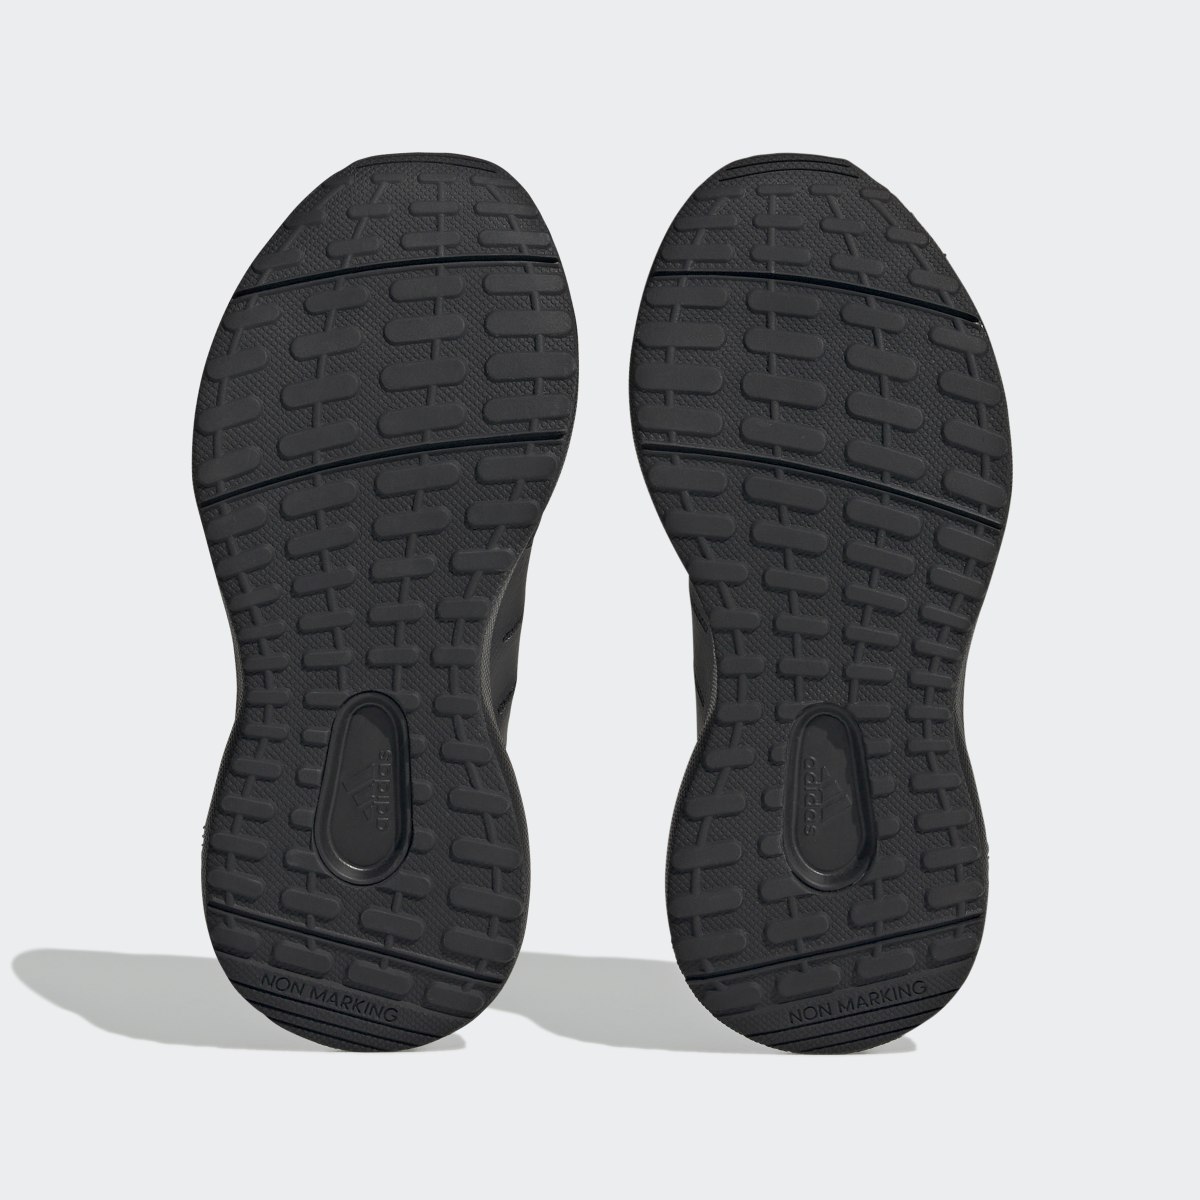 Adidas FortaRun 2.0 Cloudfoam Shoes. 4